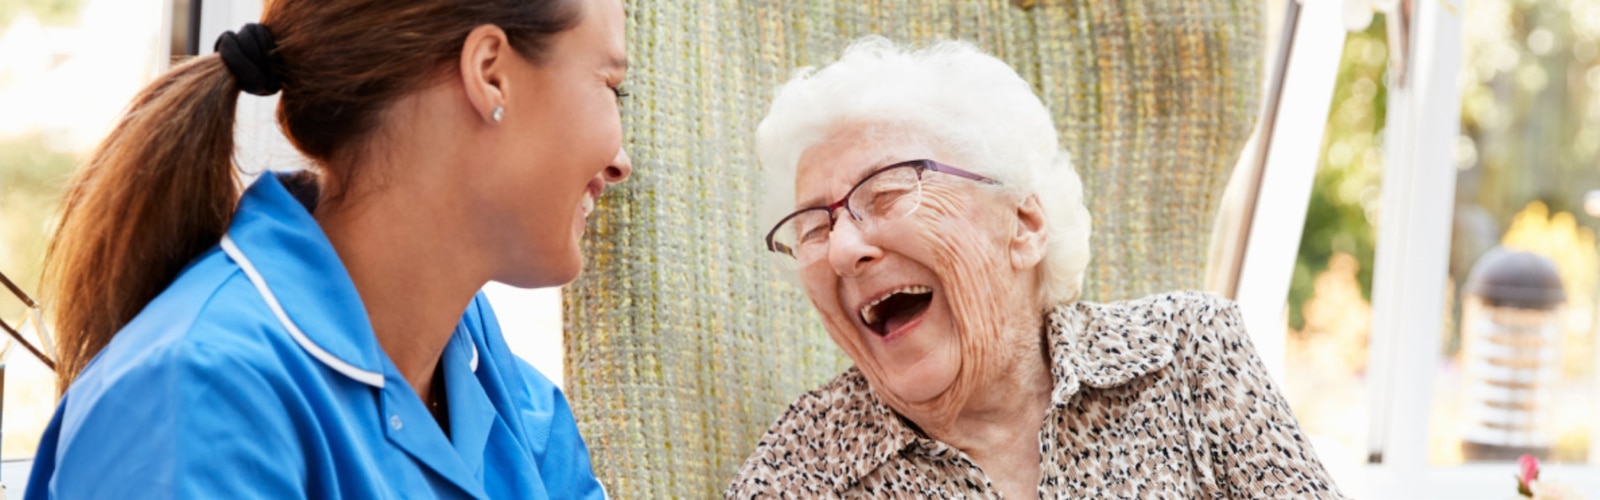 En sygeplejerske og en ældre kvinde griner sammen